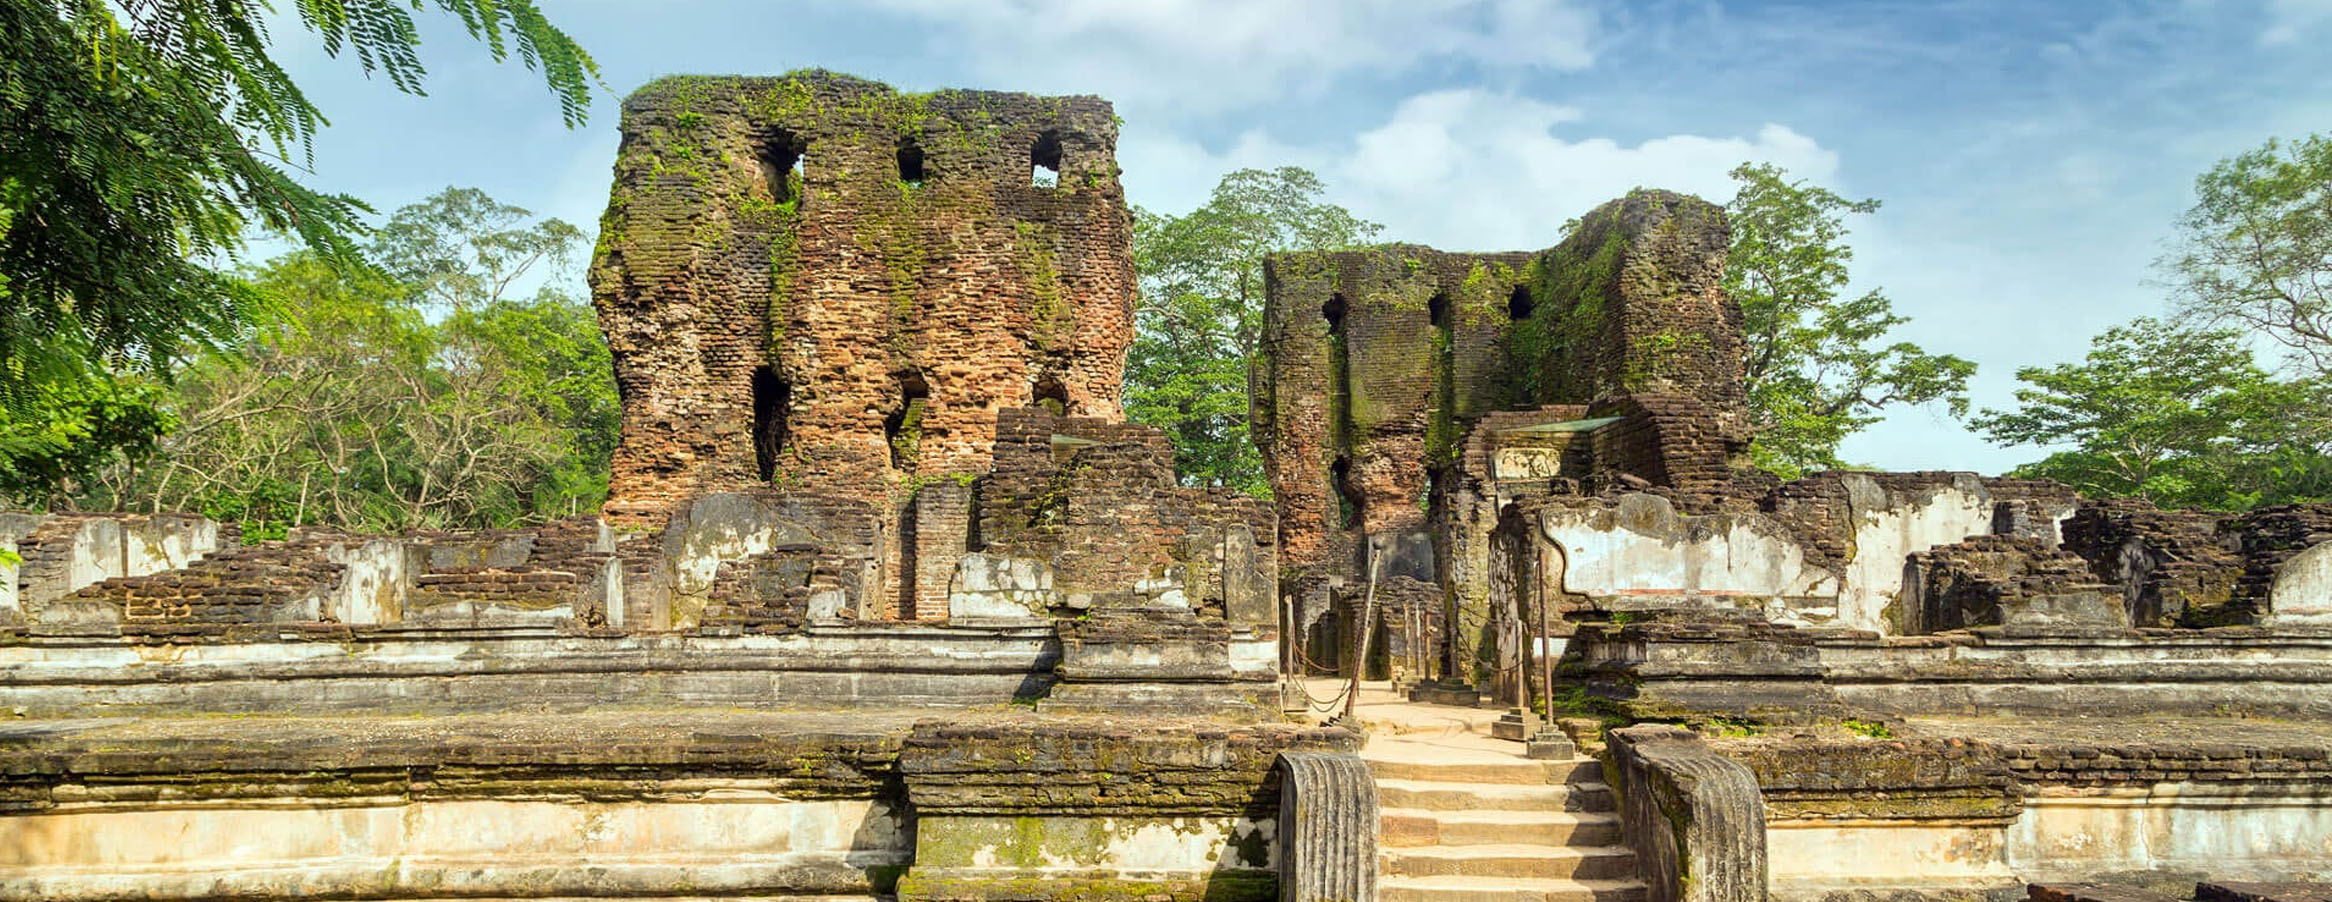 Polonnaruwa Tour in Sri Lanka | Rock Lanka Tours